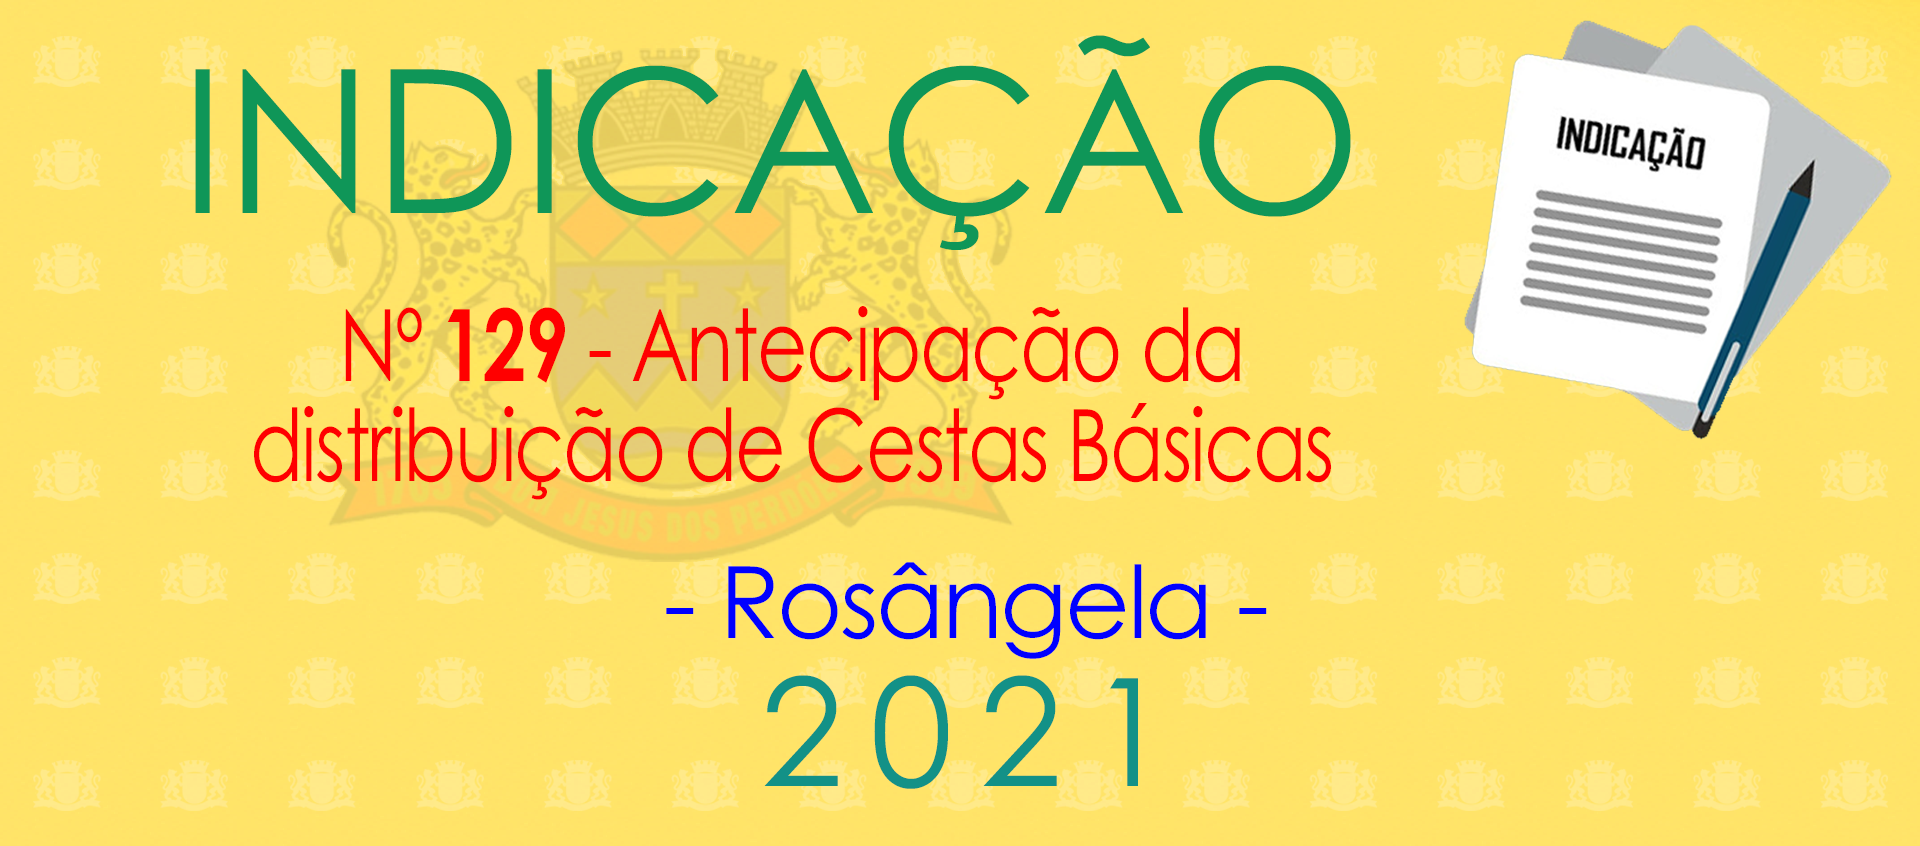 Indicação 129-2021 - Antecipação da Cesta Básica - Rosângela